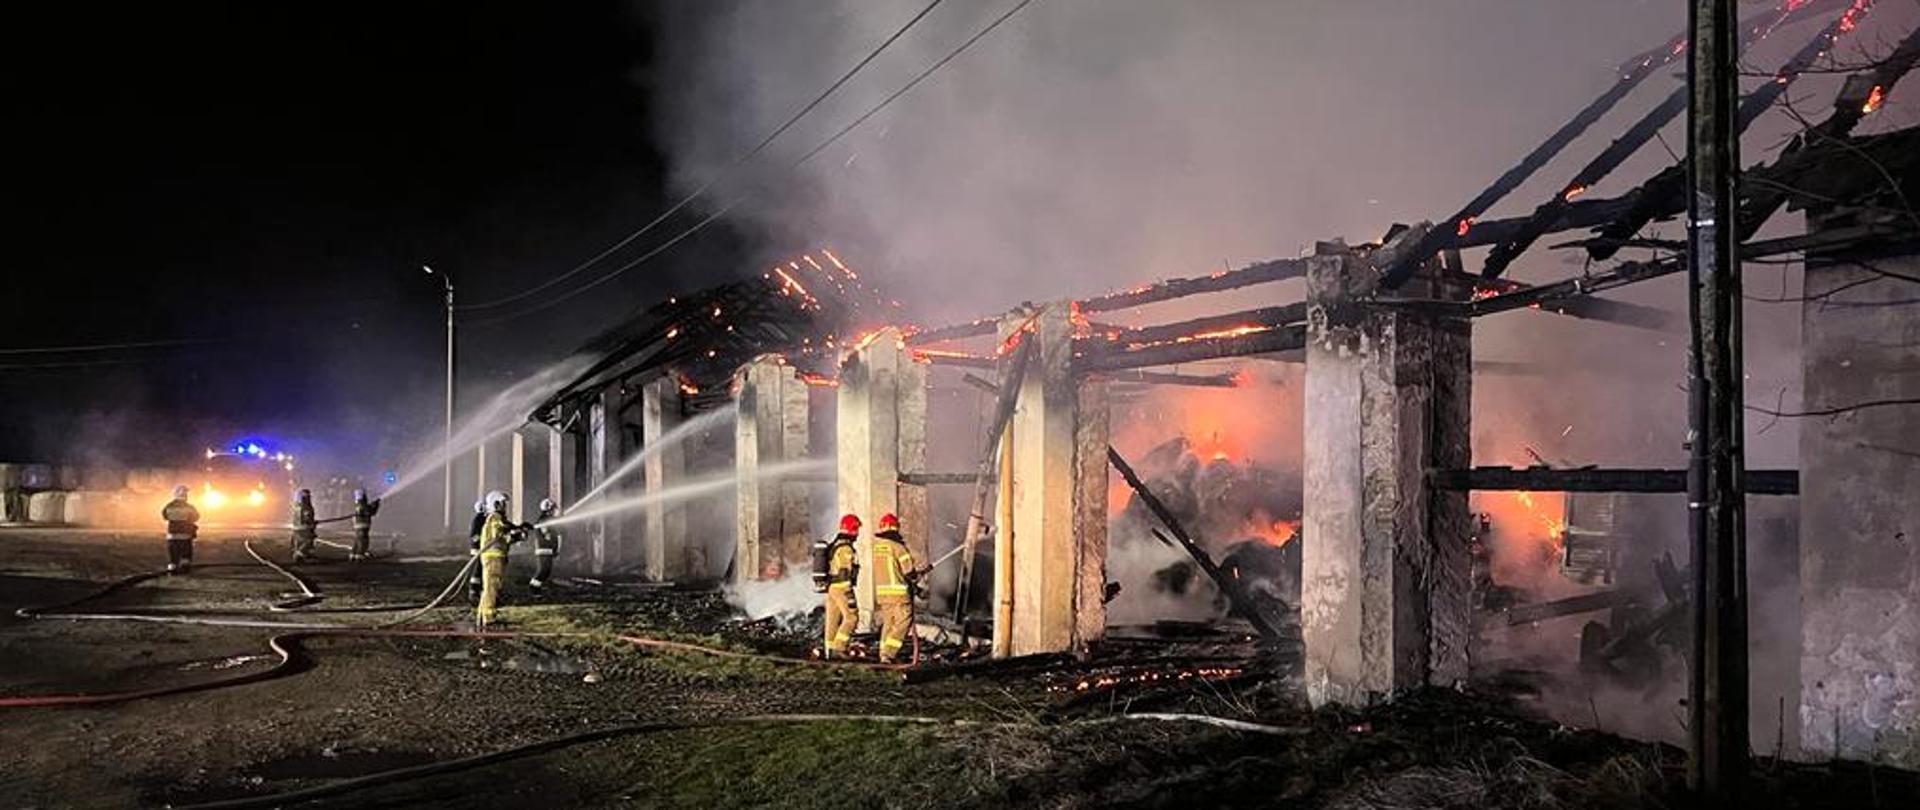 13.03.2023 po godzinie 23:47 doszło do dużego pożaru budynku magazynowego, w którym znajdowały się maszyny rolnicze, w miejscowości Simoradz, gmina Dębowiec. Na szczęście w wyniku tego zdarzenia nie było osób poszkodowanych. 